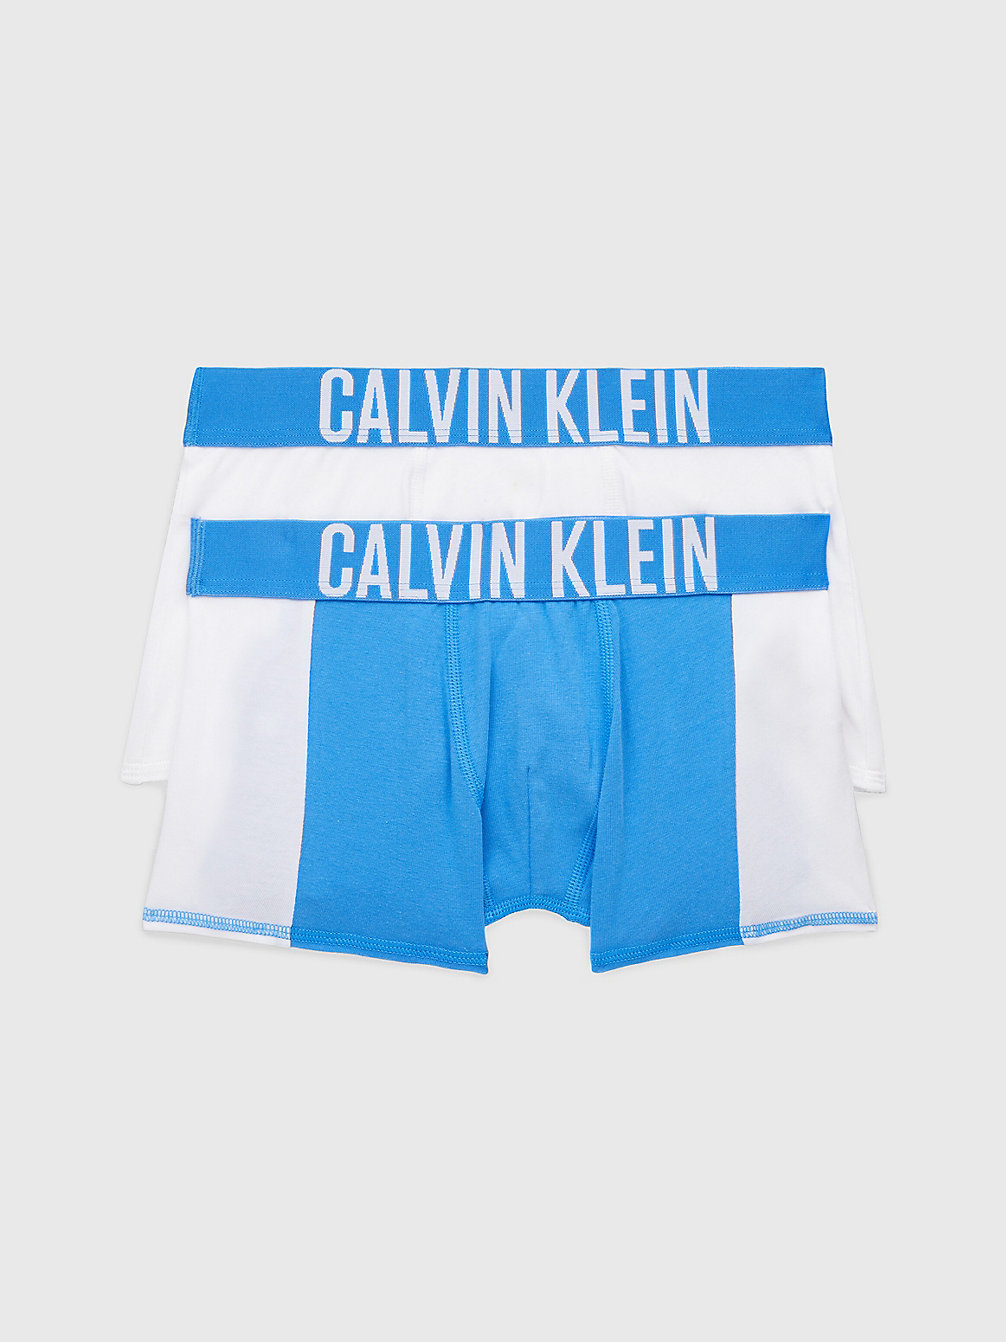 ELECTRICAQUA/PVHWHITE 2er-Pack Boxershorts Für Jungen – Intense Power undefined Jungen Calvin Klein